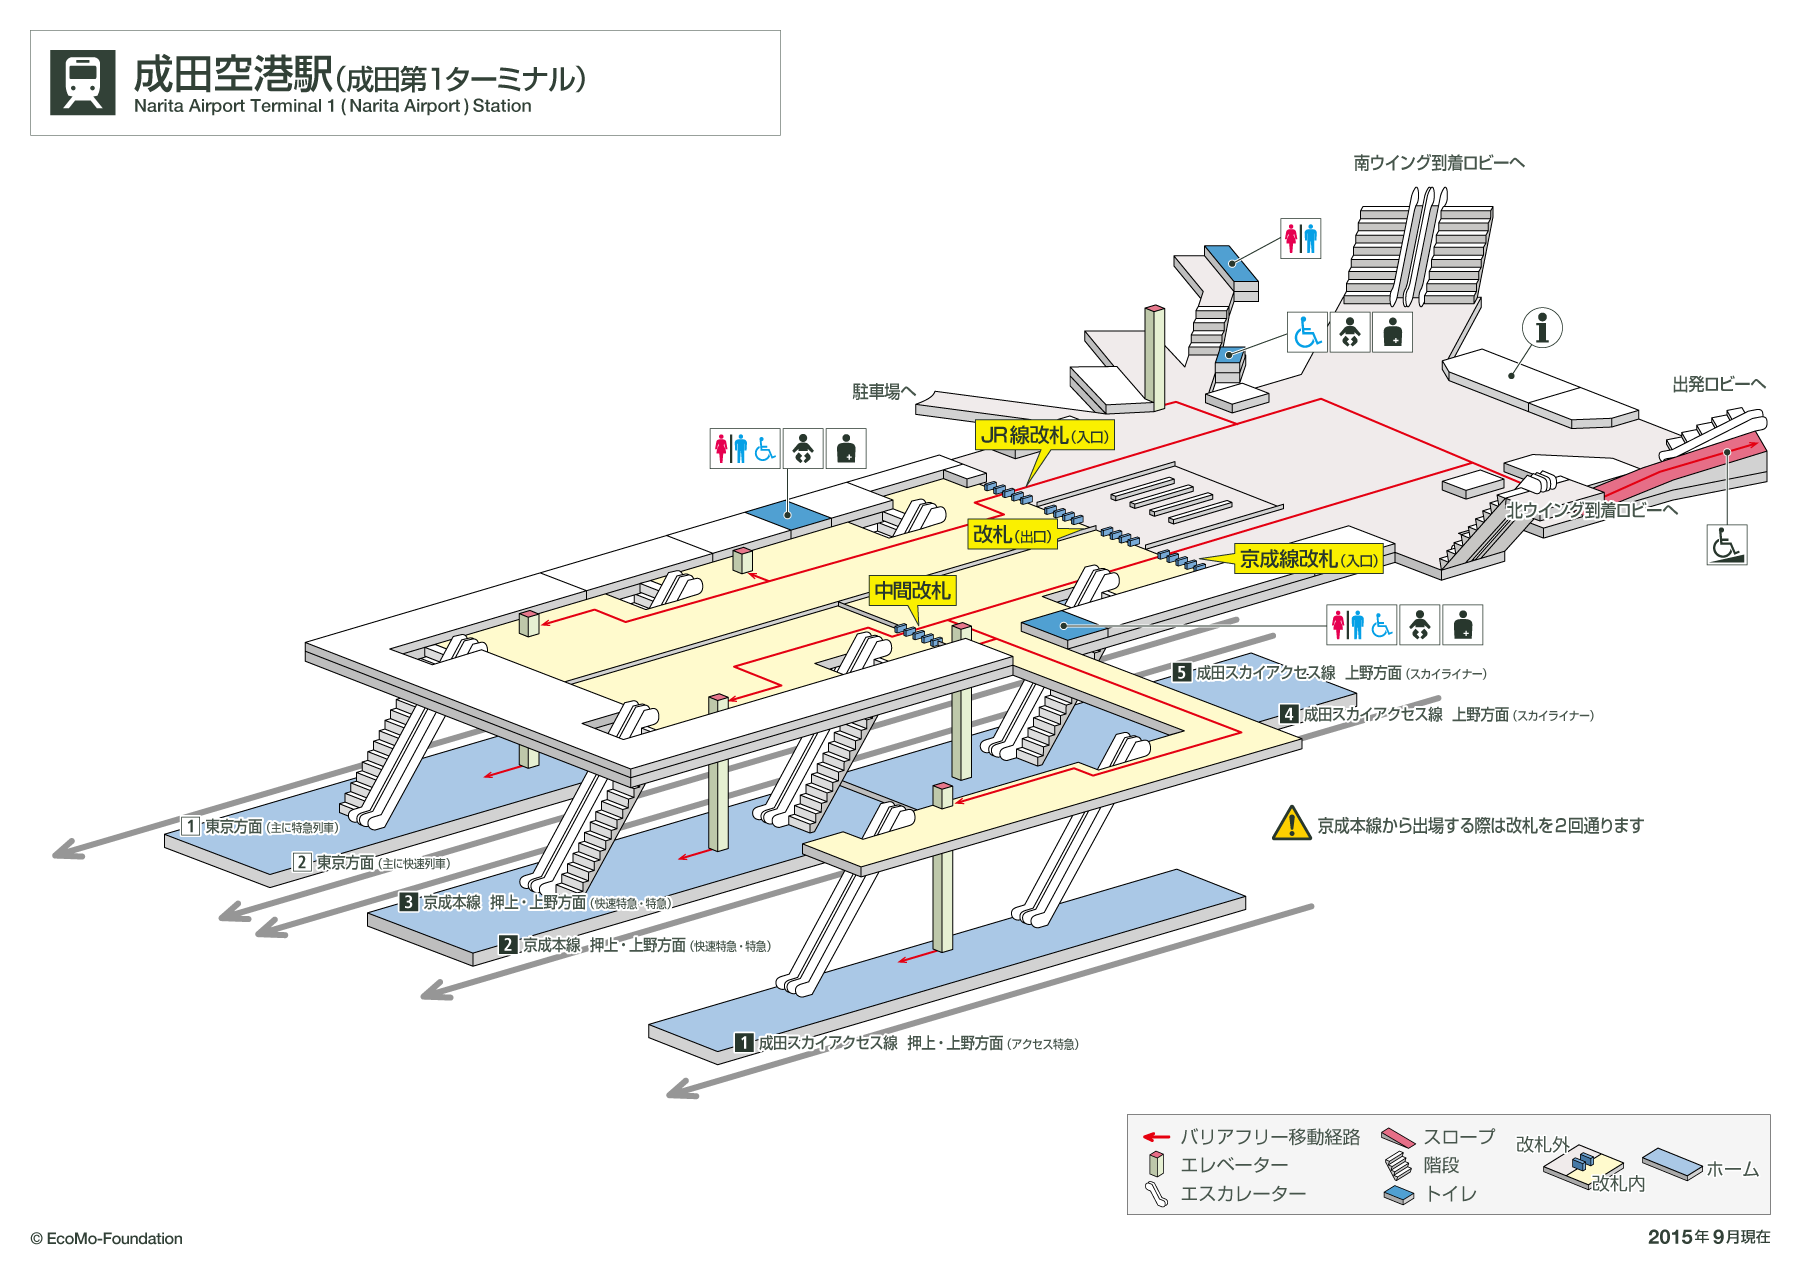 [{'s_sta_name': '成田空港', 's_r_sta_name': 'Narita-Airport', 'encode_sta_name': '%E6%88%90%E7%94%B0%E7%A9%BA%E6%B8%AF'}]